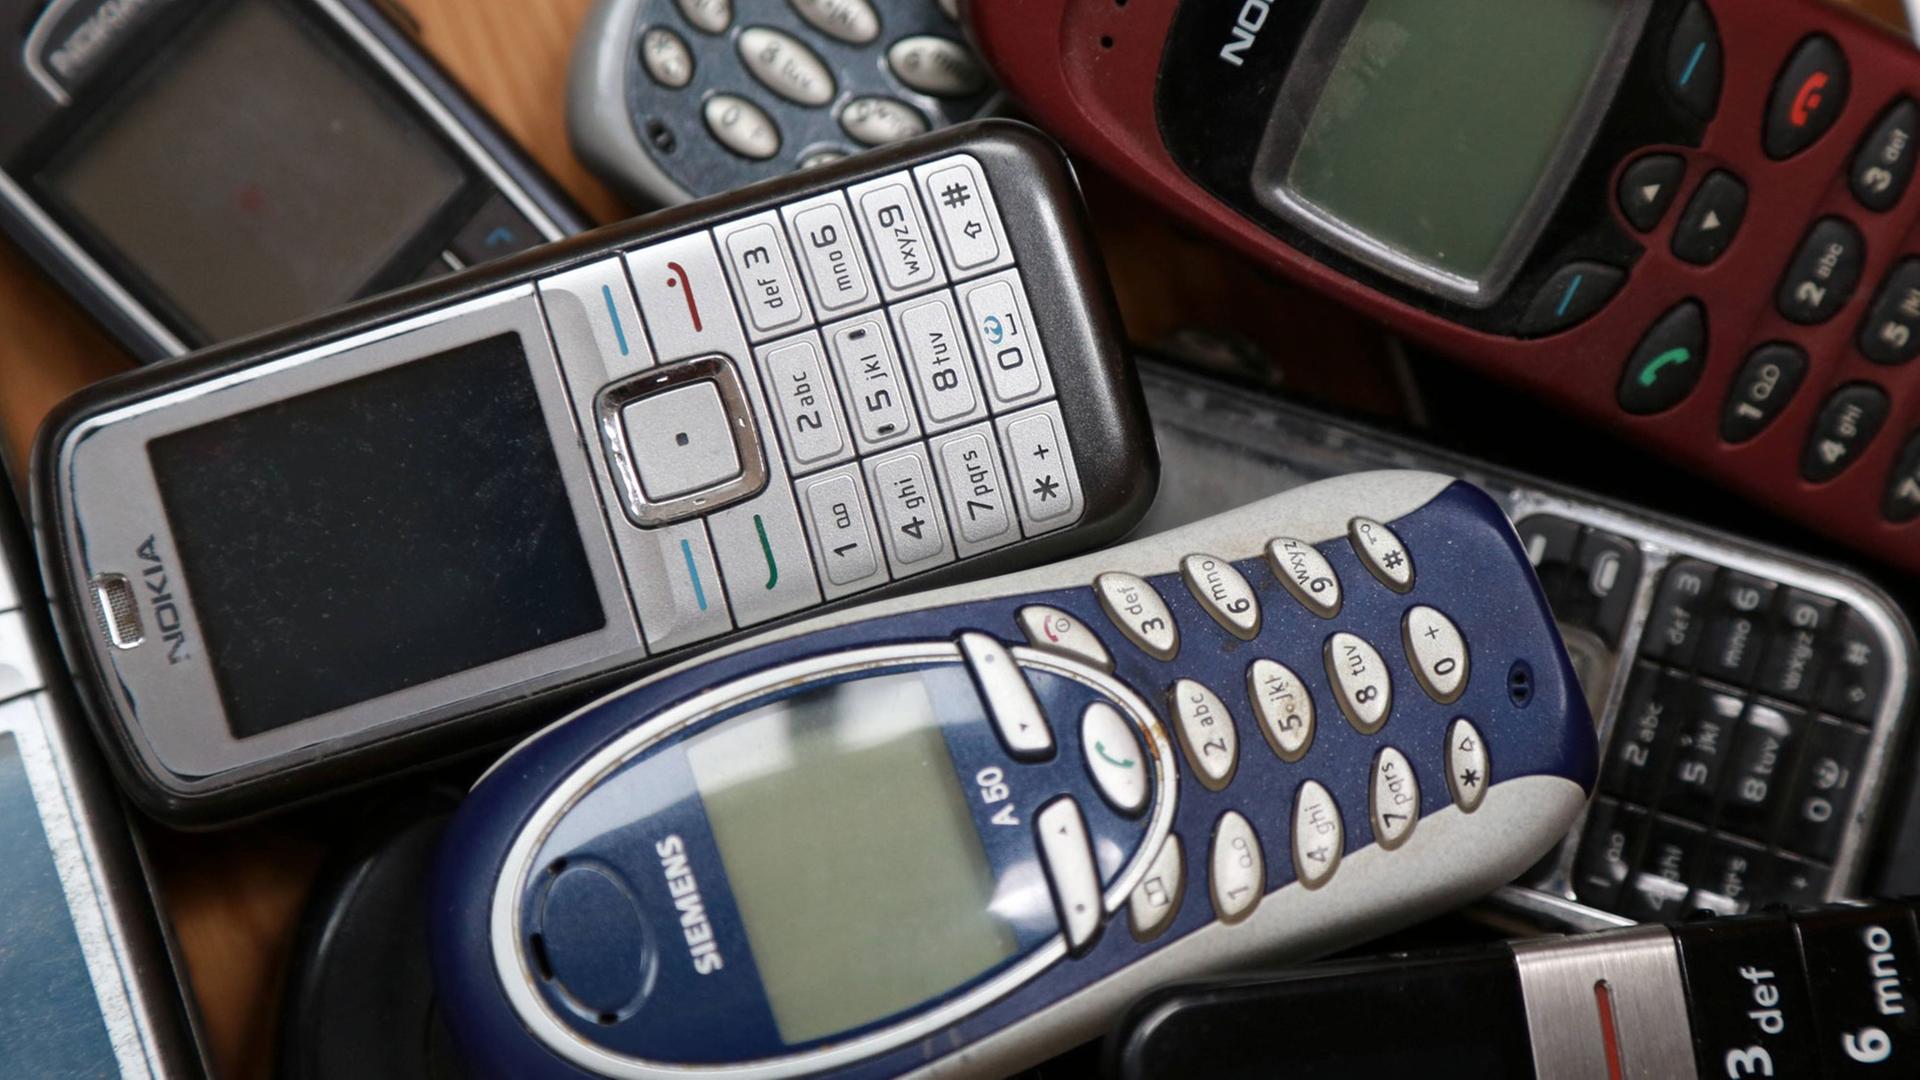 Mehrere ausgediente Mobiltelefone liegen auf einem Tisch.